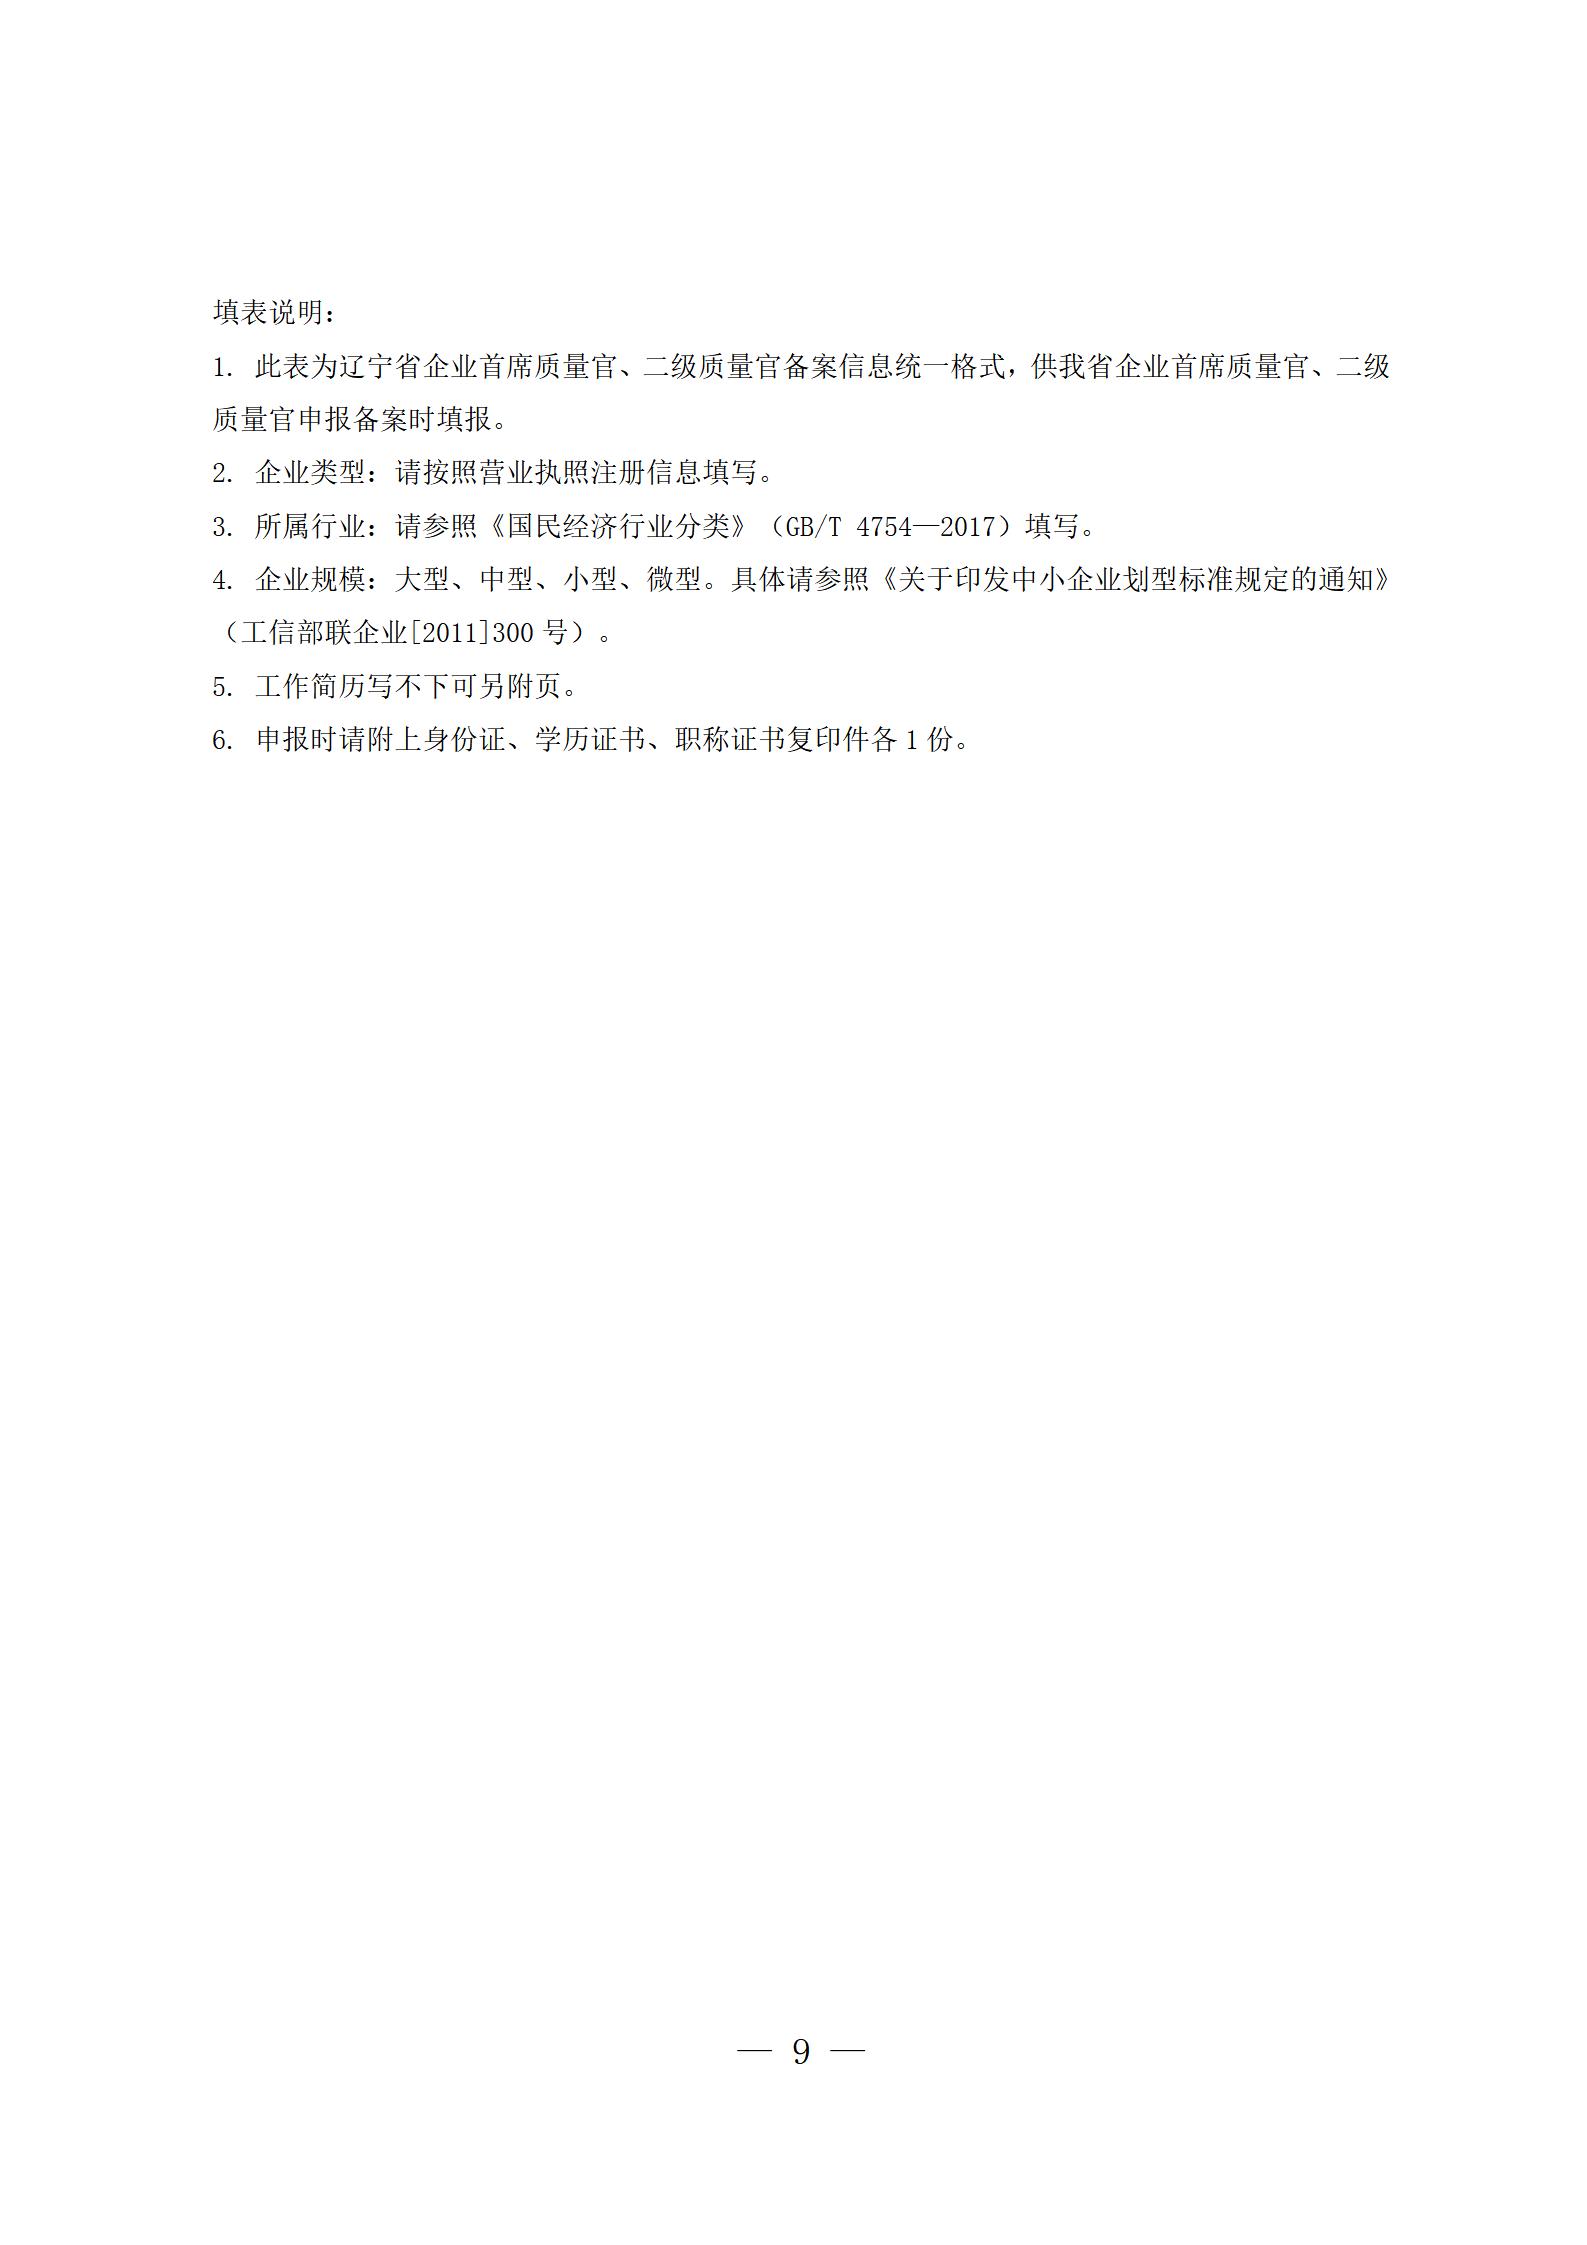 3辽宁省企业首席质量官制度实施方案(1)_09.jpg